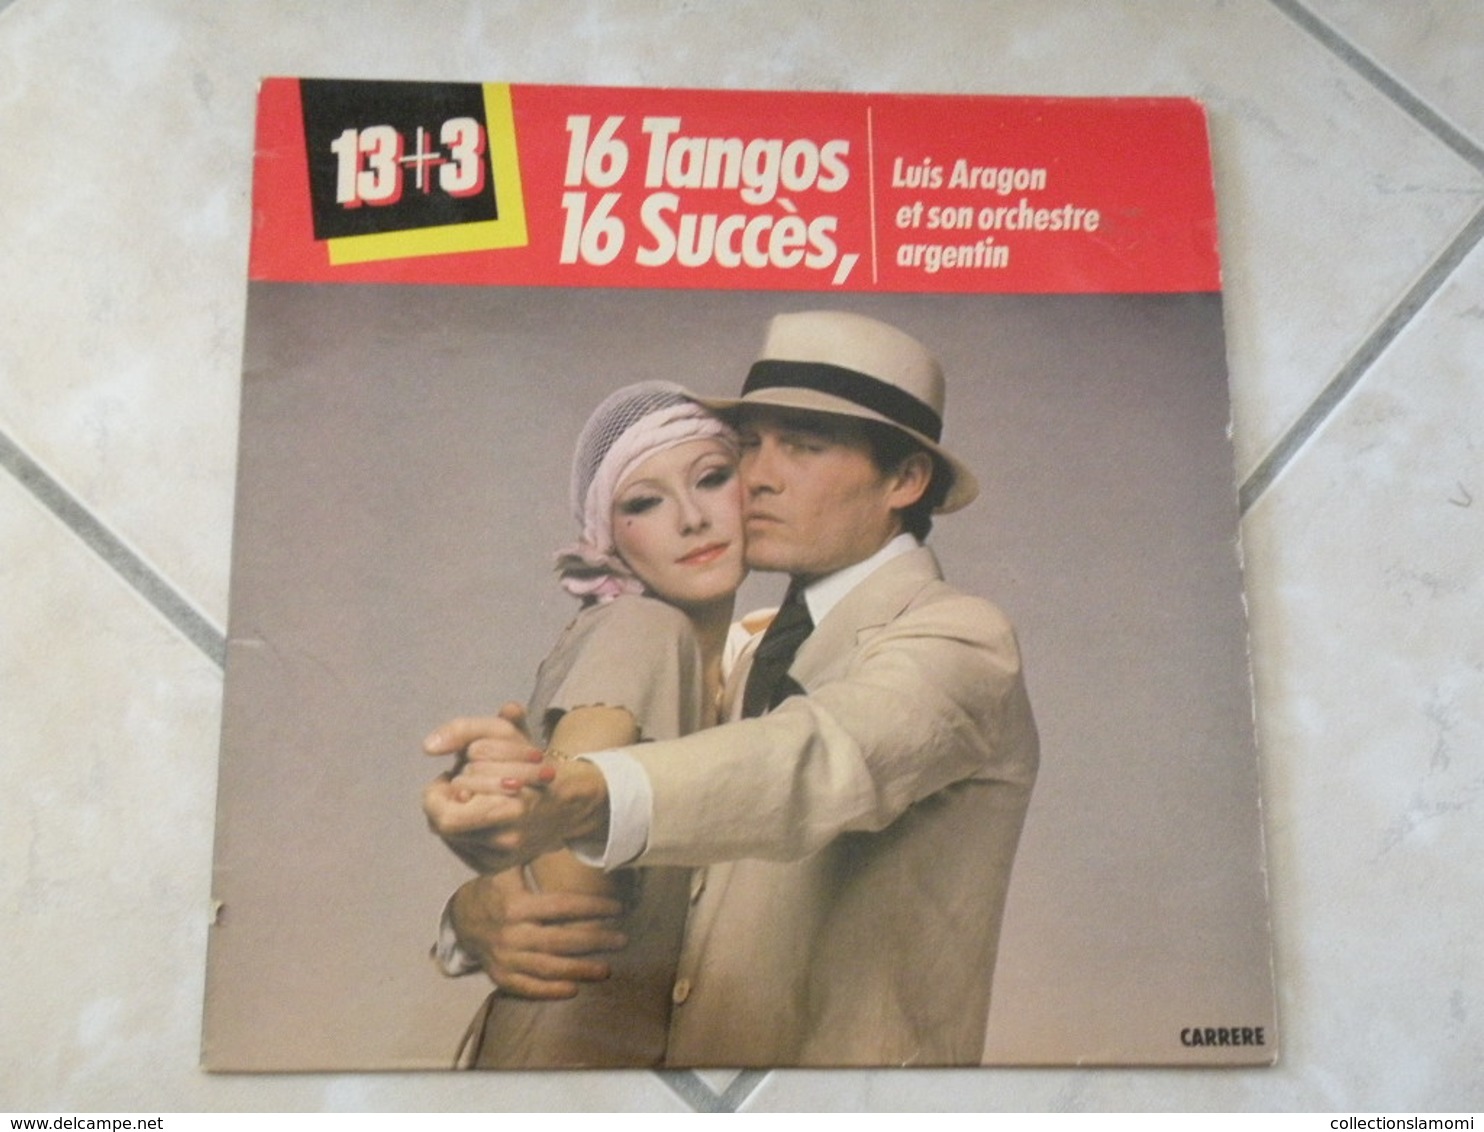 Luis Aragon Et Son Orchestre Argentin (16 Tangos) - (Titres Sur Photos) - Vinyle 33 T LP - Comiques, Cabaret